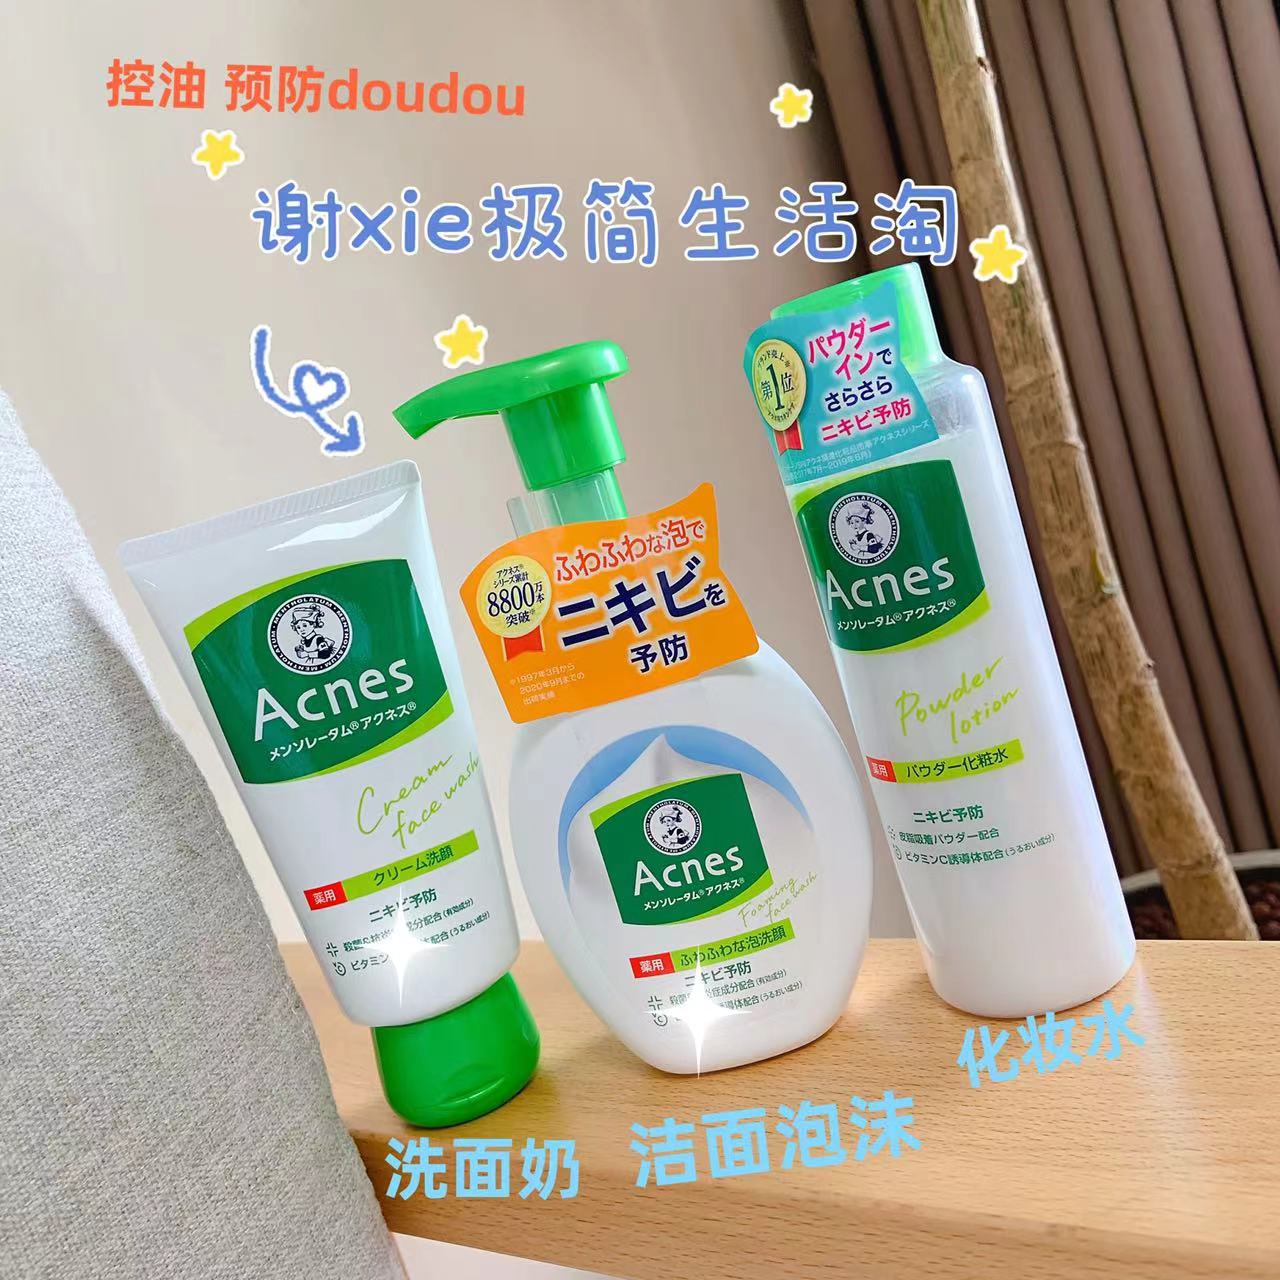 （现货）日本本土曼秀雷登预fang痘dou系列夏季控油洗面奶 化妆水